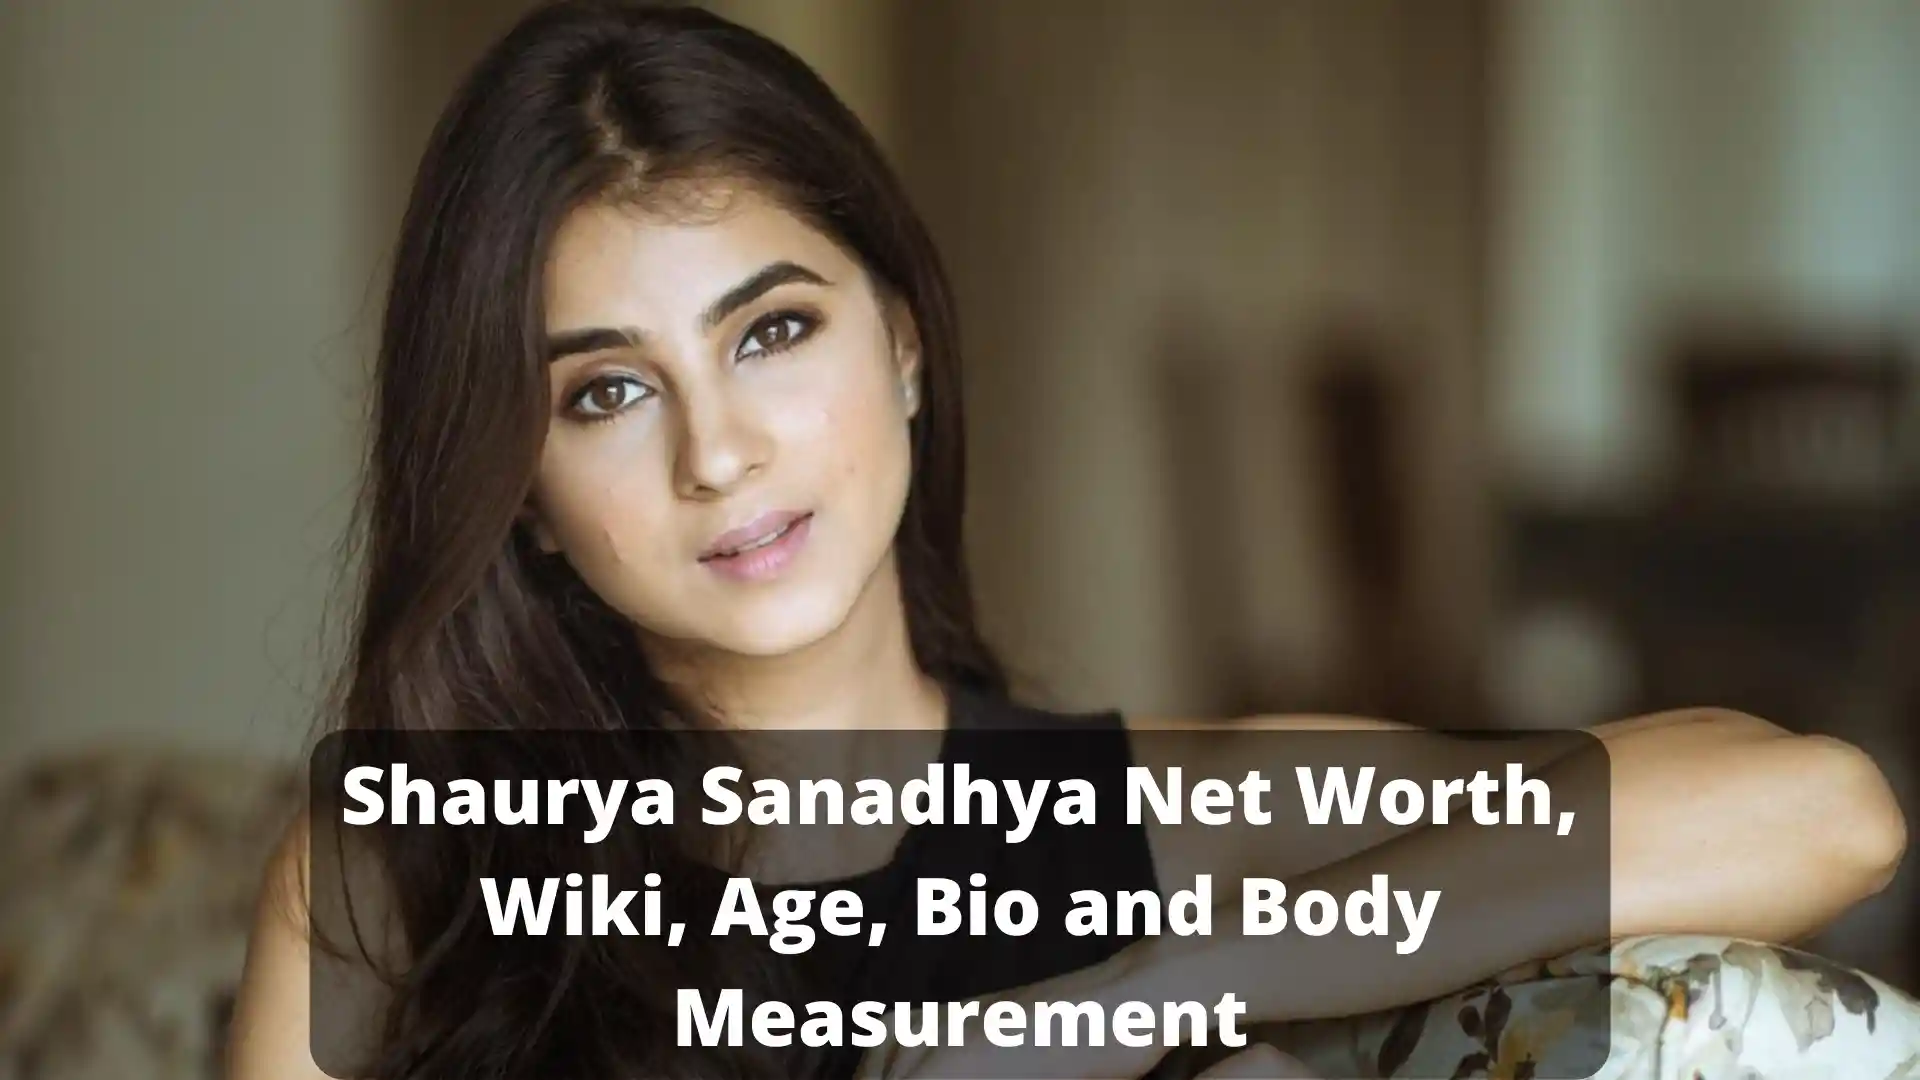 Shaurya Sanadhya Net Worth, Wiki, Age, Bio and Body Measurement